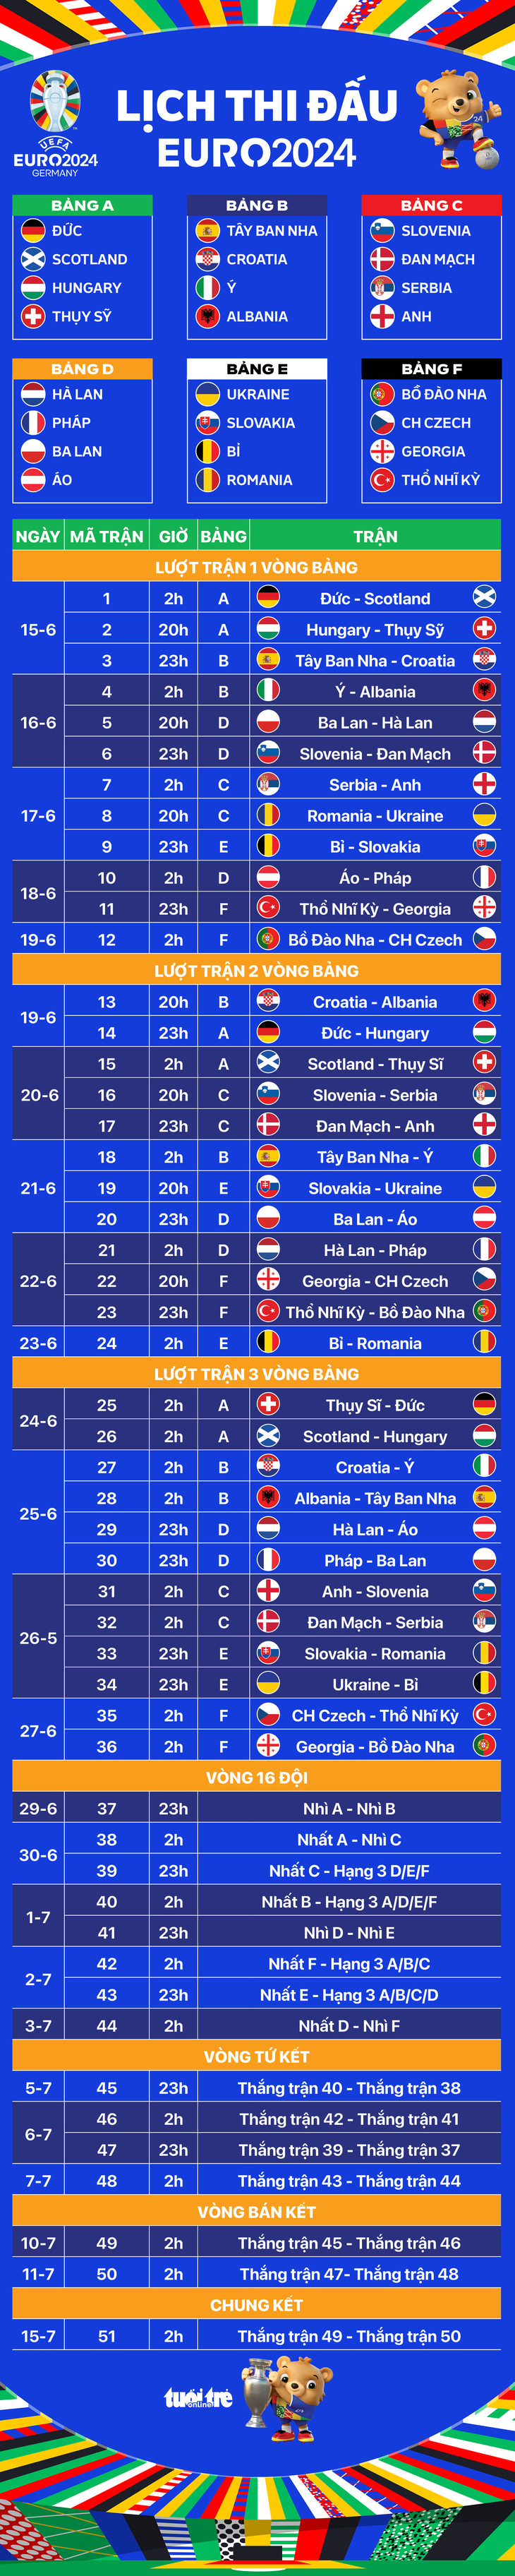 Lịch thi đấu toàn bộ 51 trận ở Euro 2024 - Đồ họa: AN BÌNH